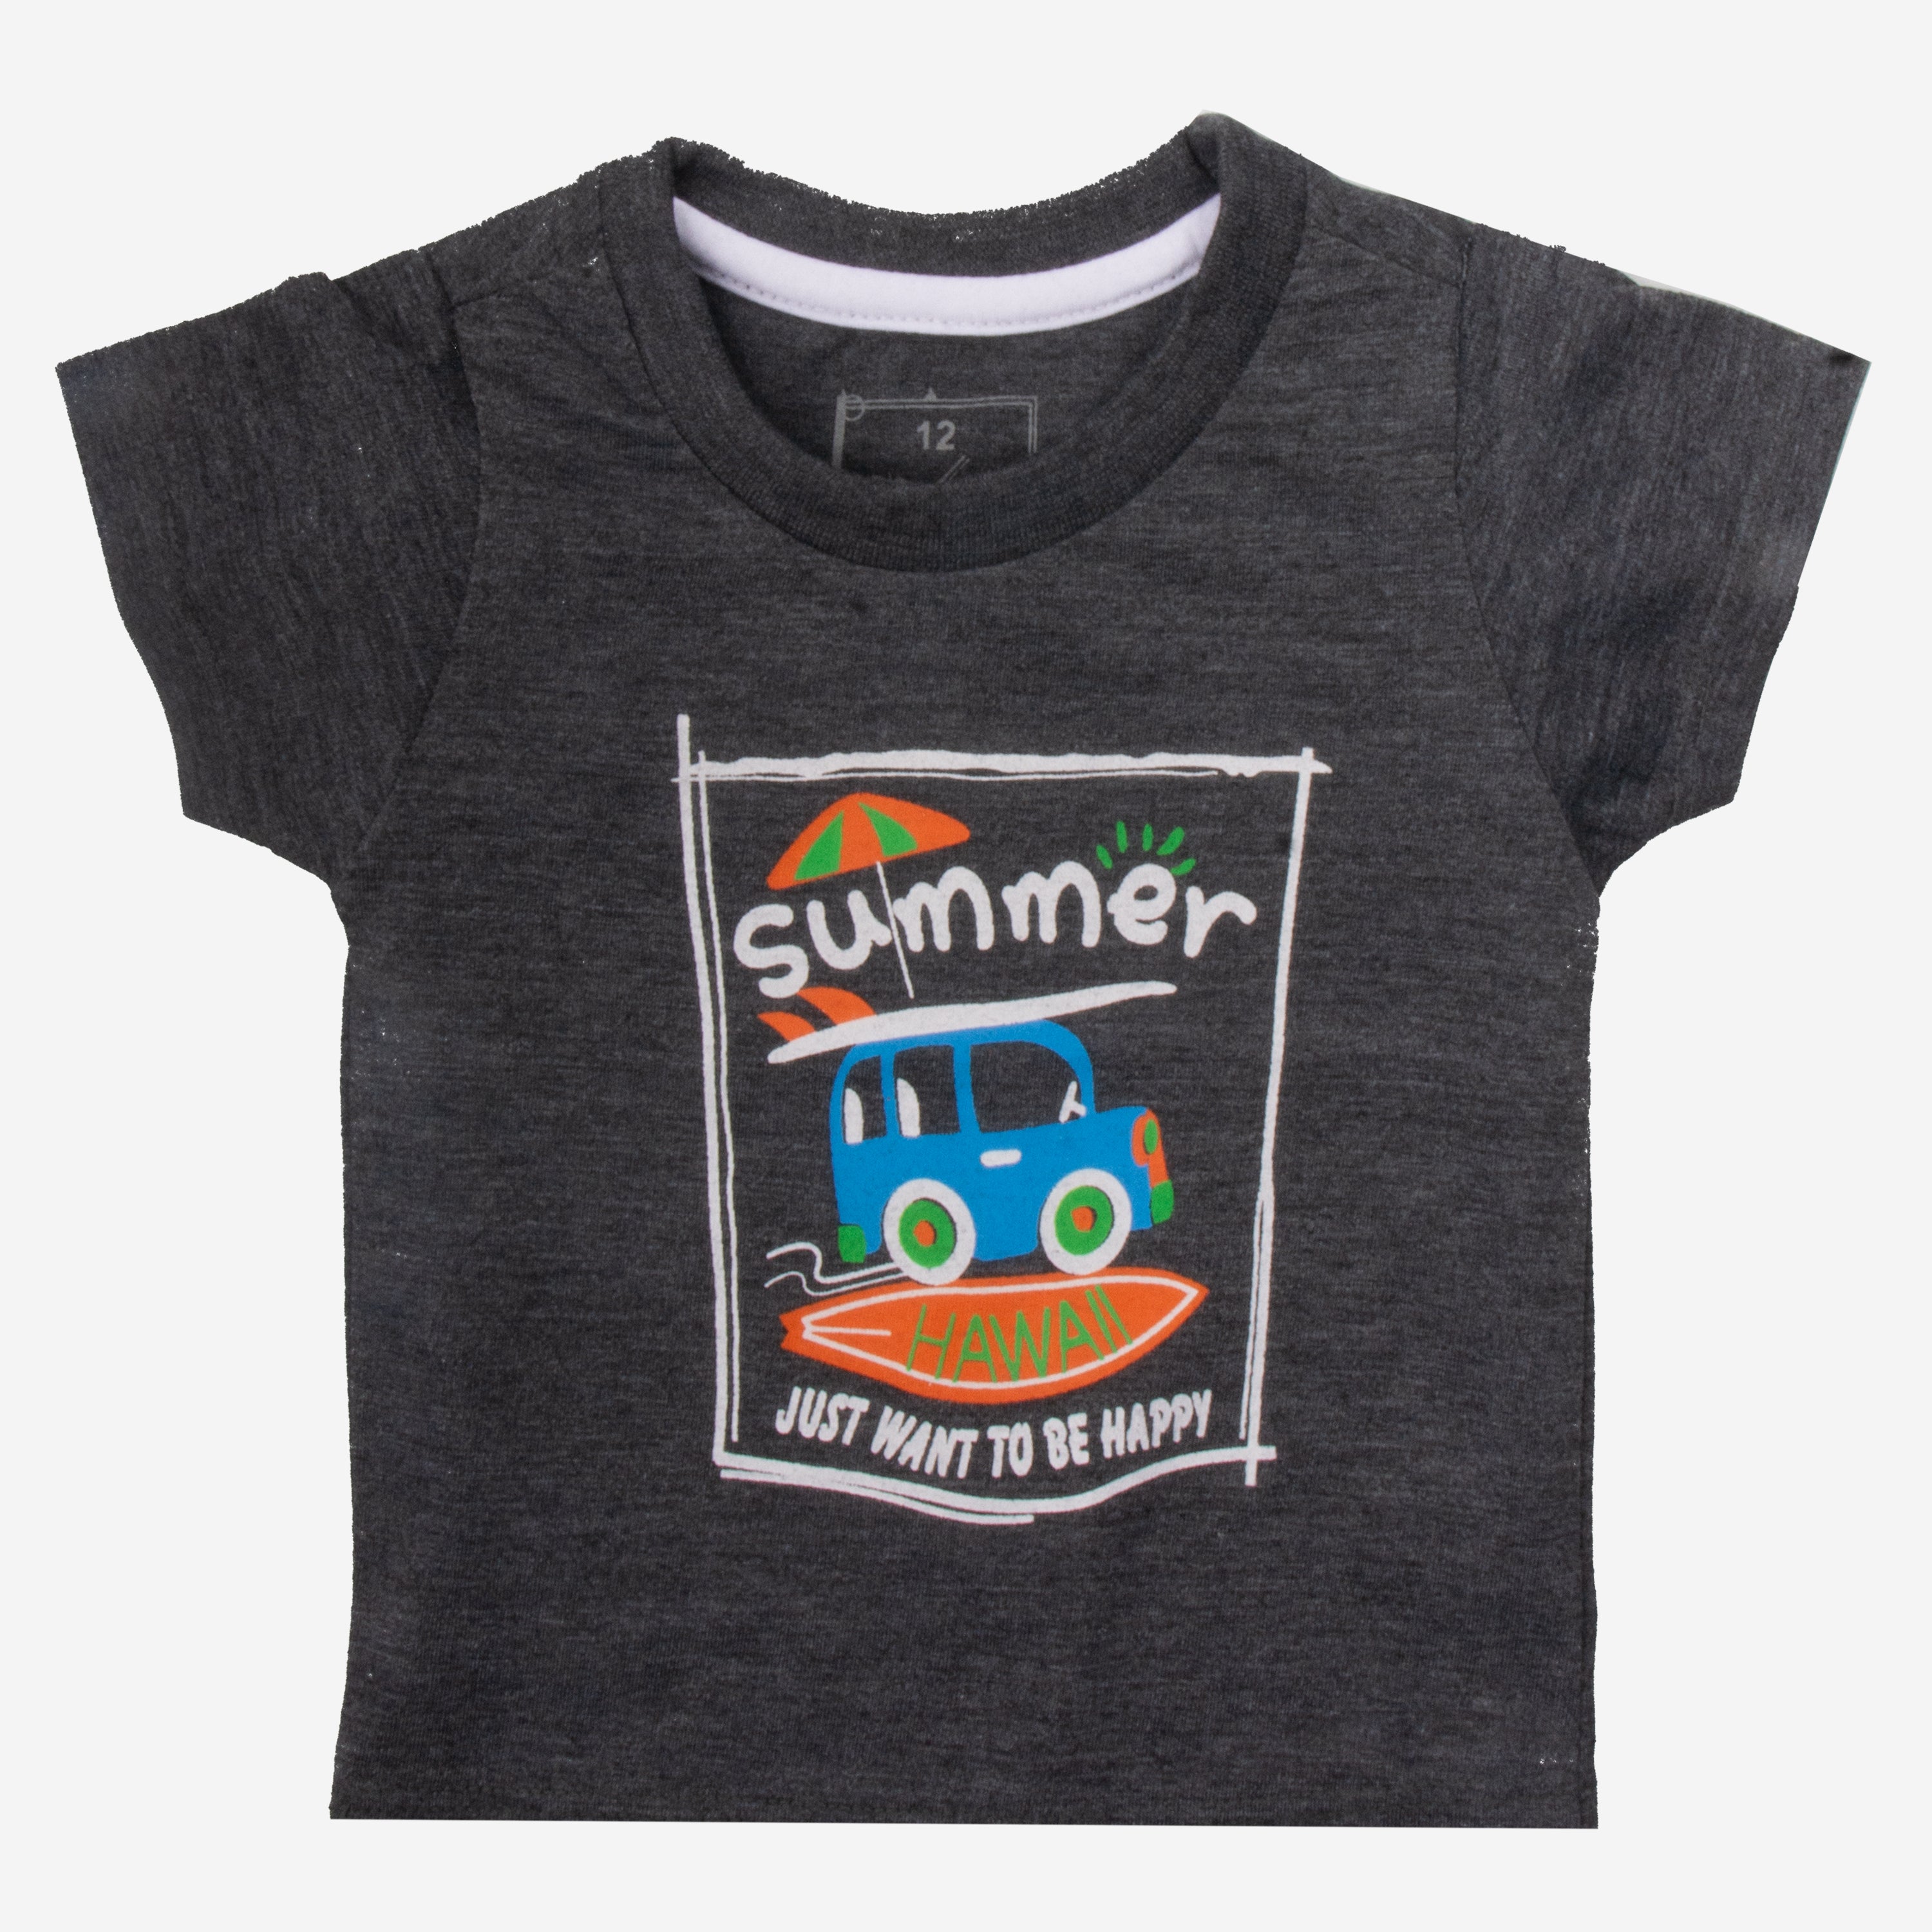 Baba Printed T-Shirt (Summer )